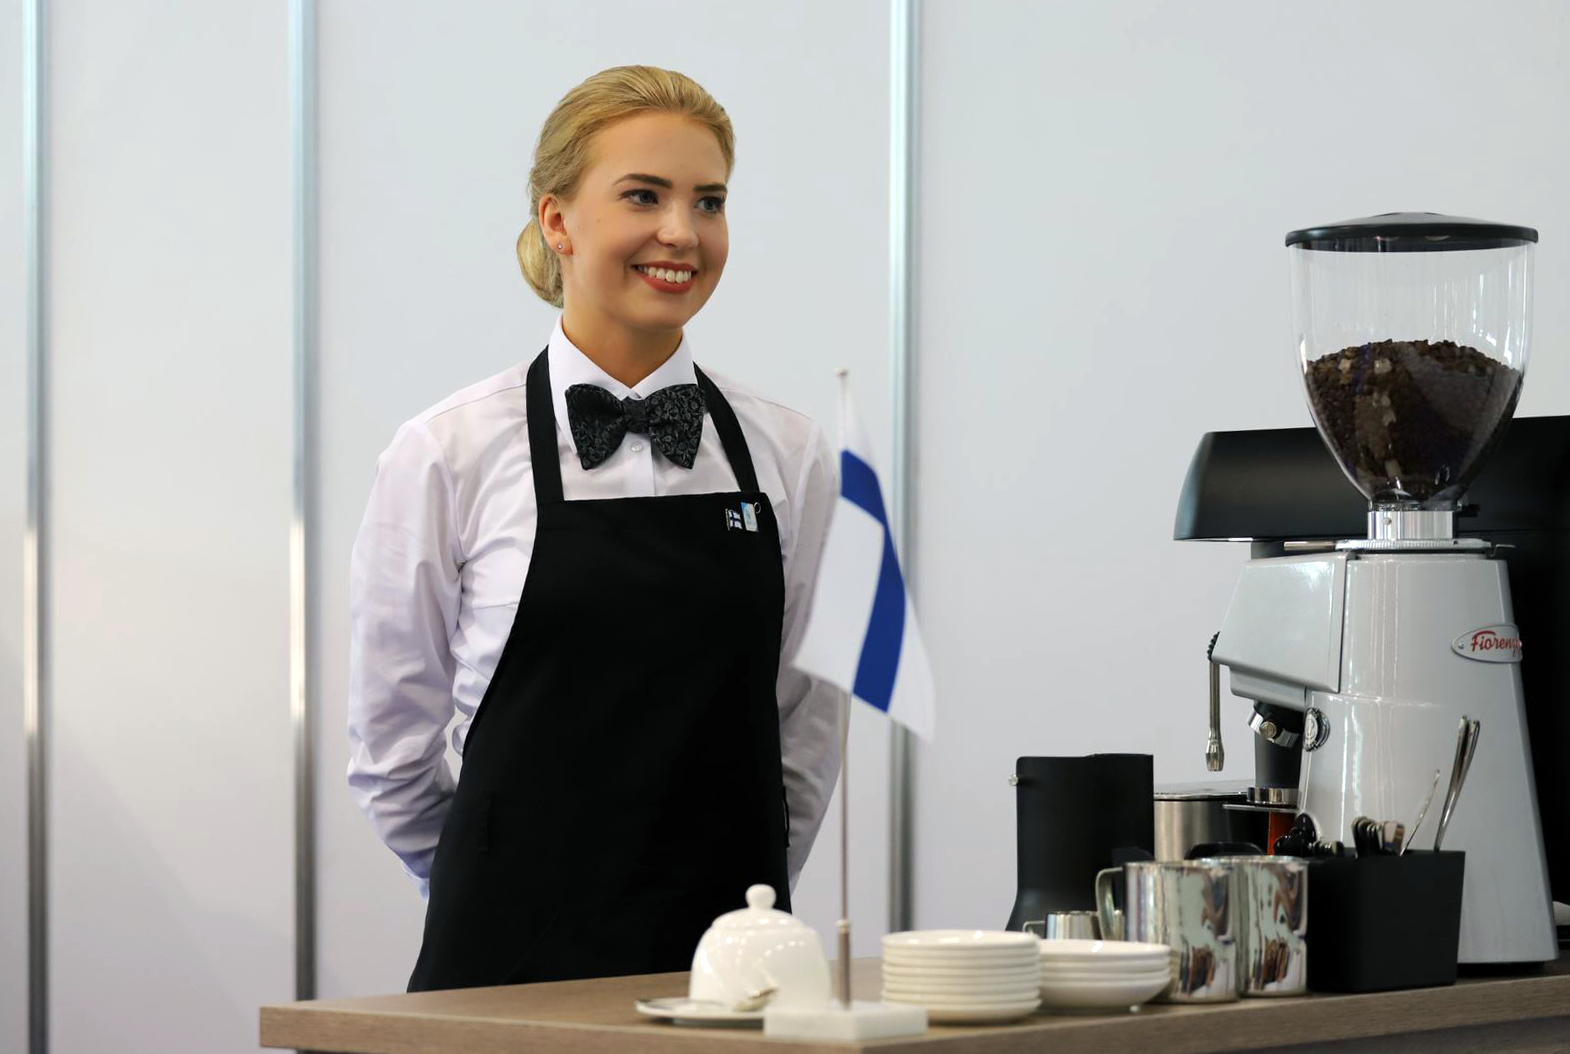 Nainen seisoo ja hymyilee kahvinkeittimen ja astioiden vieressä.